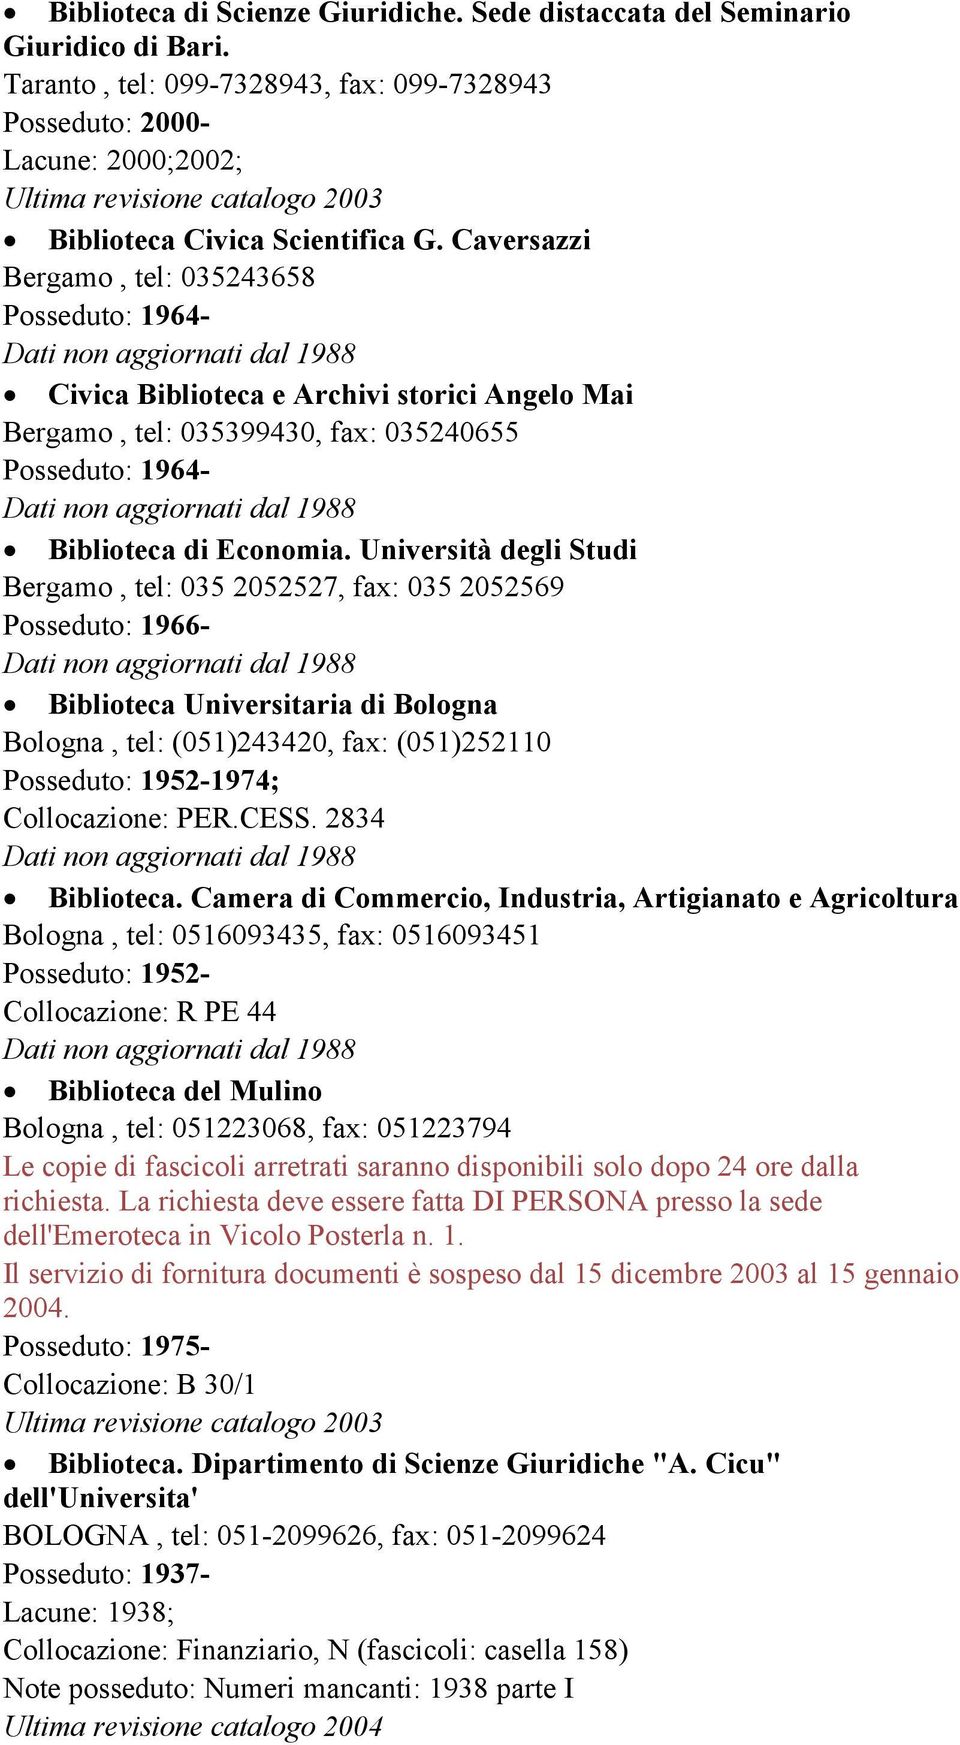 Università degli Studi Bergamo, tel: 035 2052527, fax: 035 2052569 Posseduto: 1966- Biblioteca Universitaria di Bologna Bologna, tel: (051)243420, fax: (051)252110 Posseduto: 1952-1974; Collocazione: